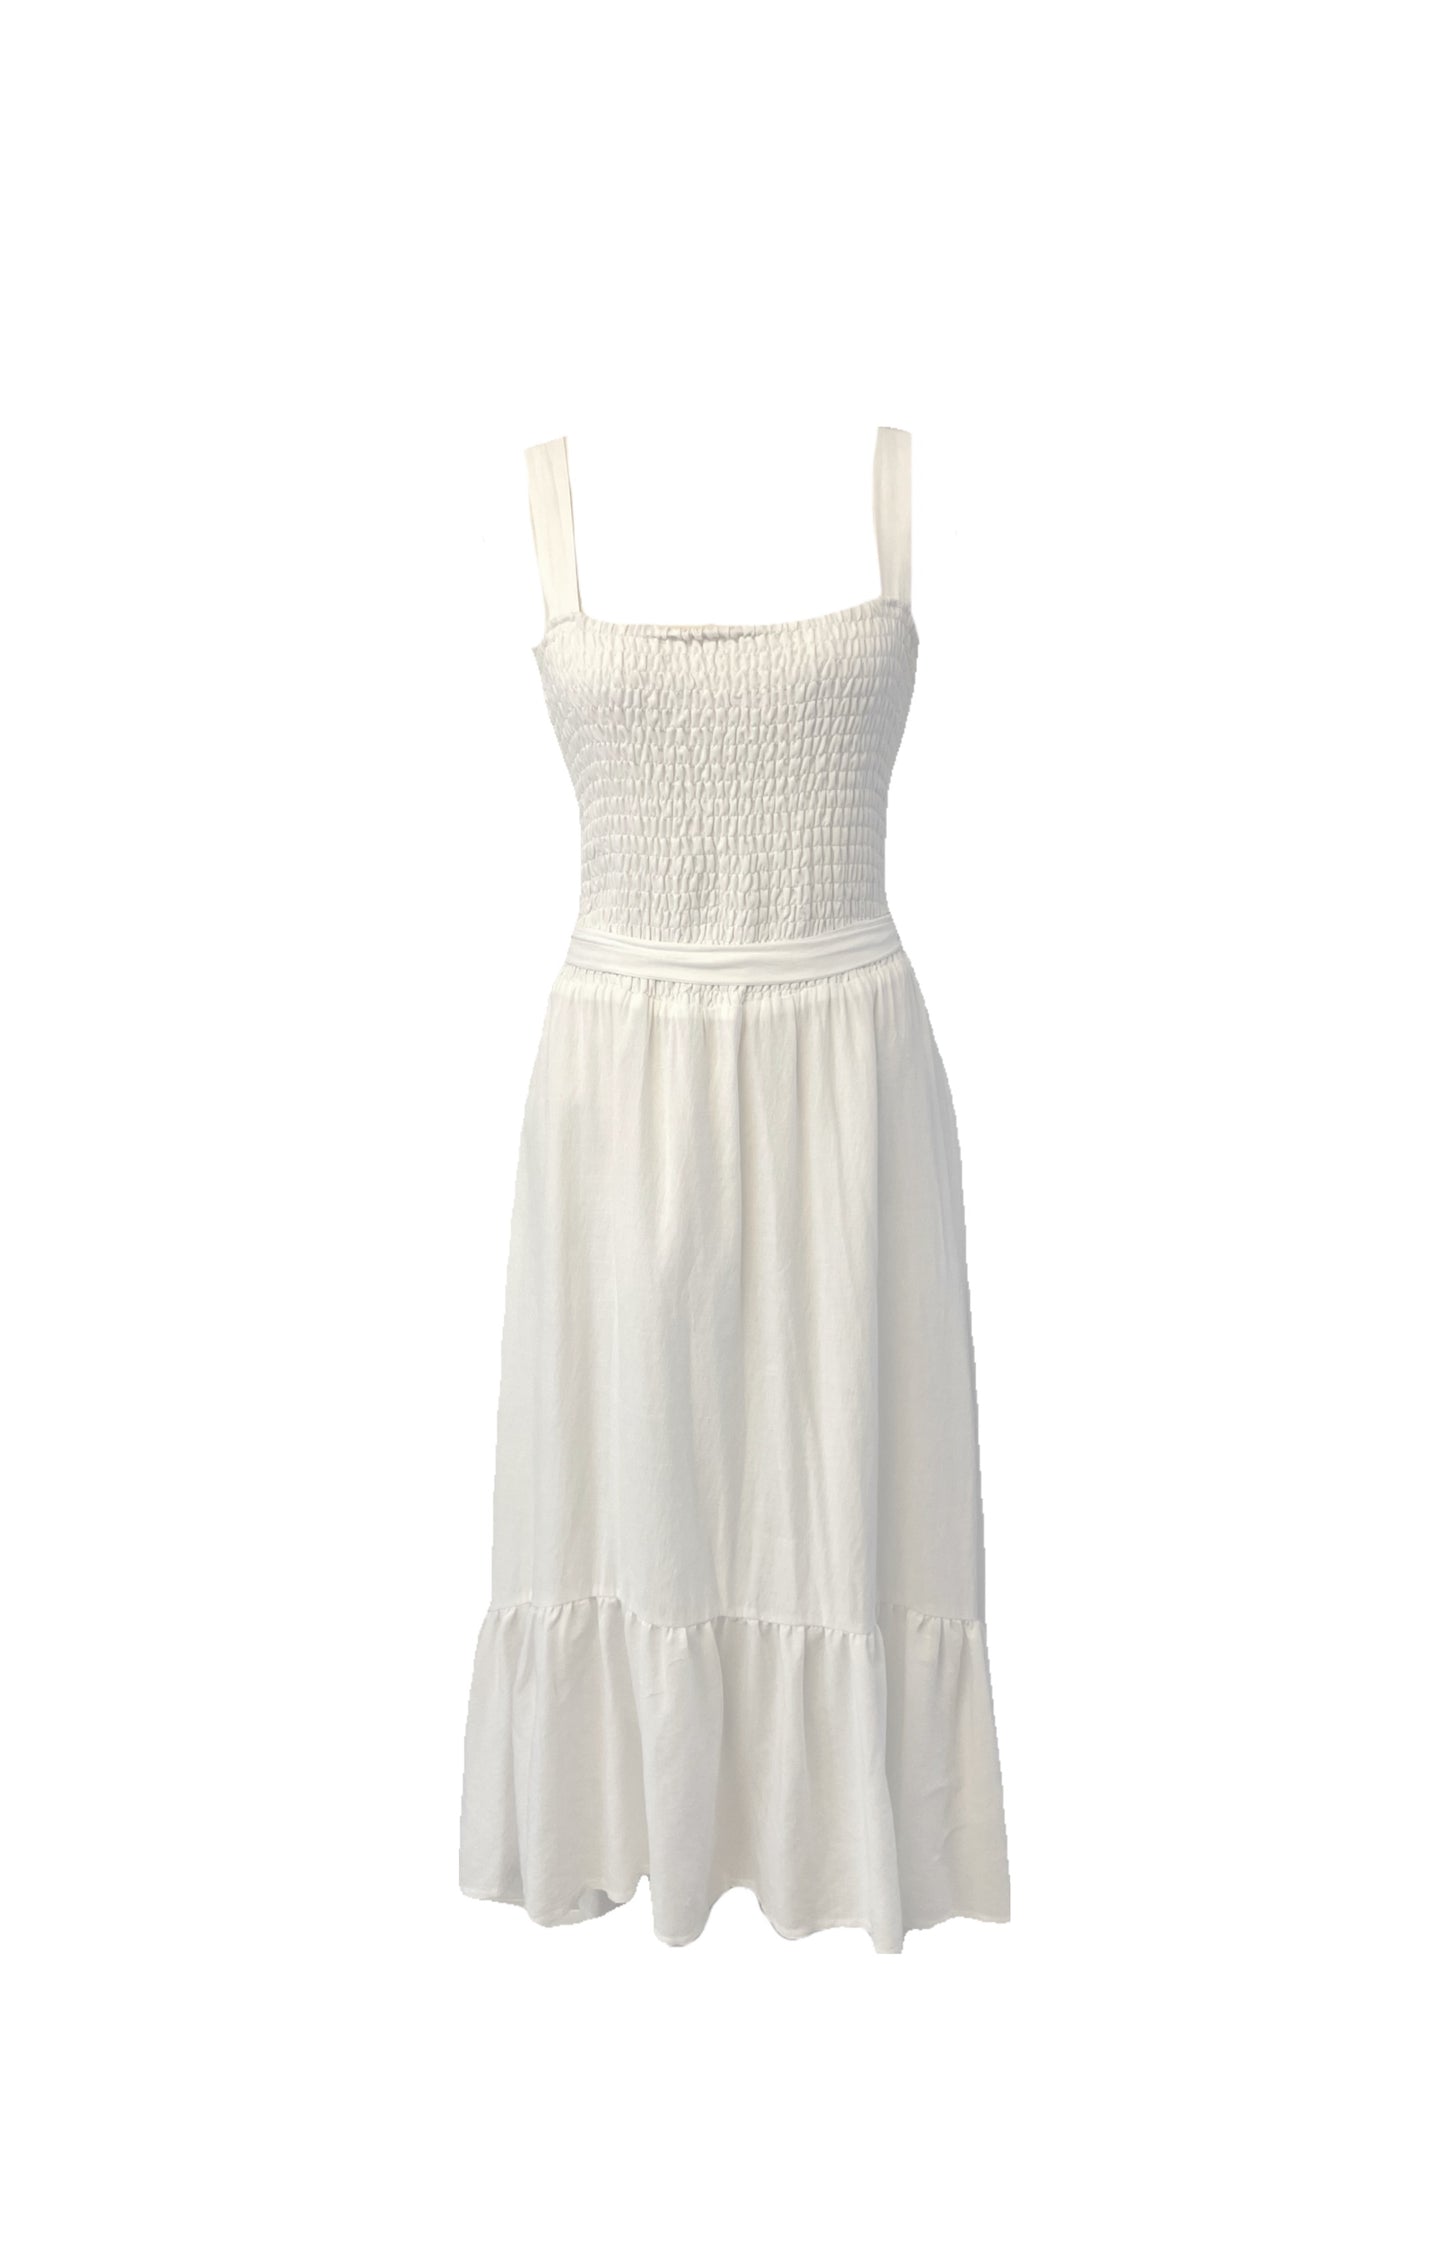 Shirred Dress by Sheike size 16